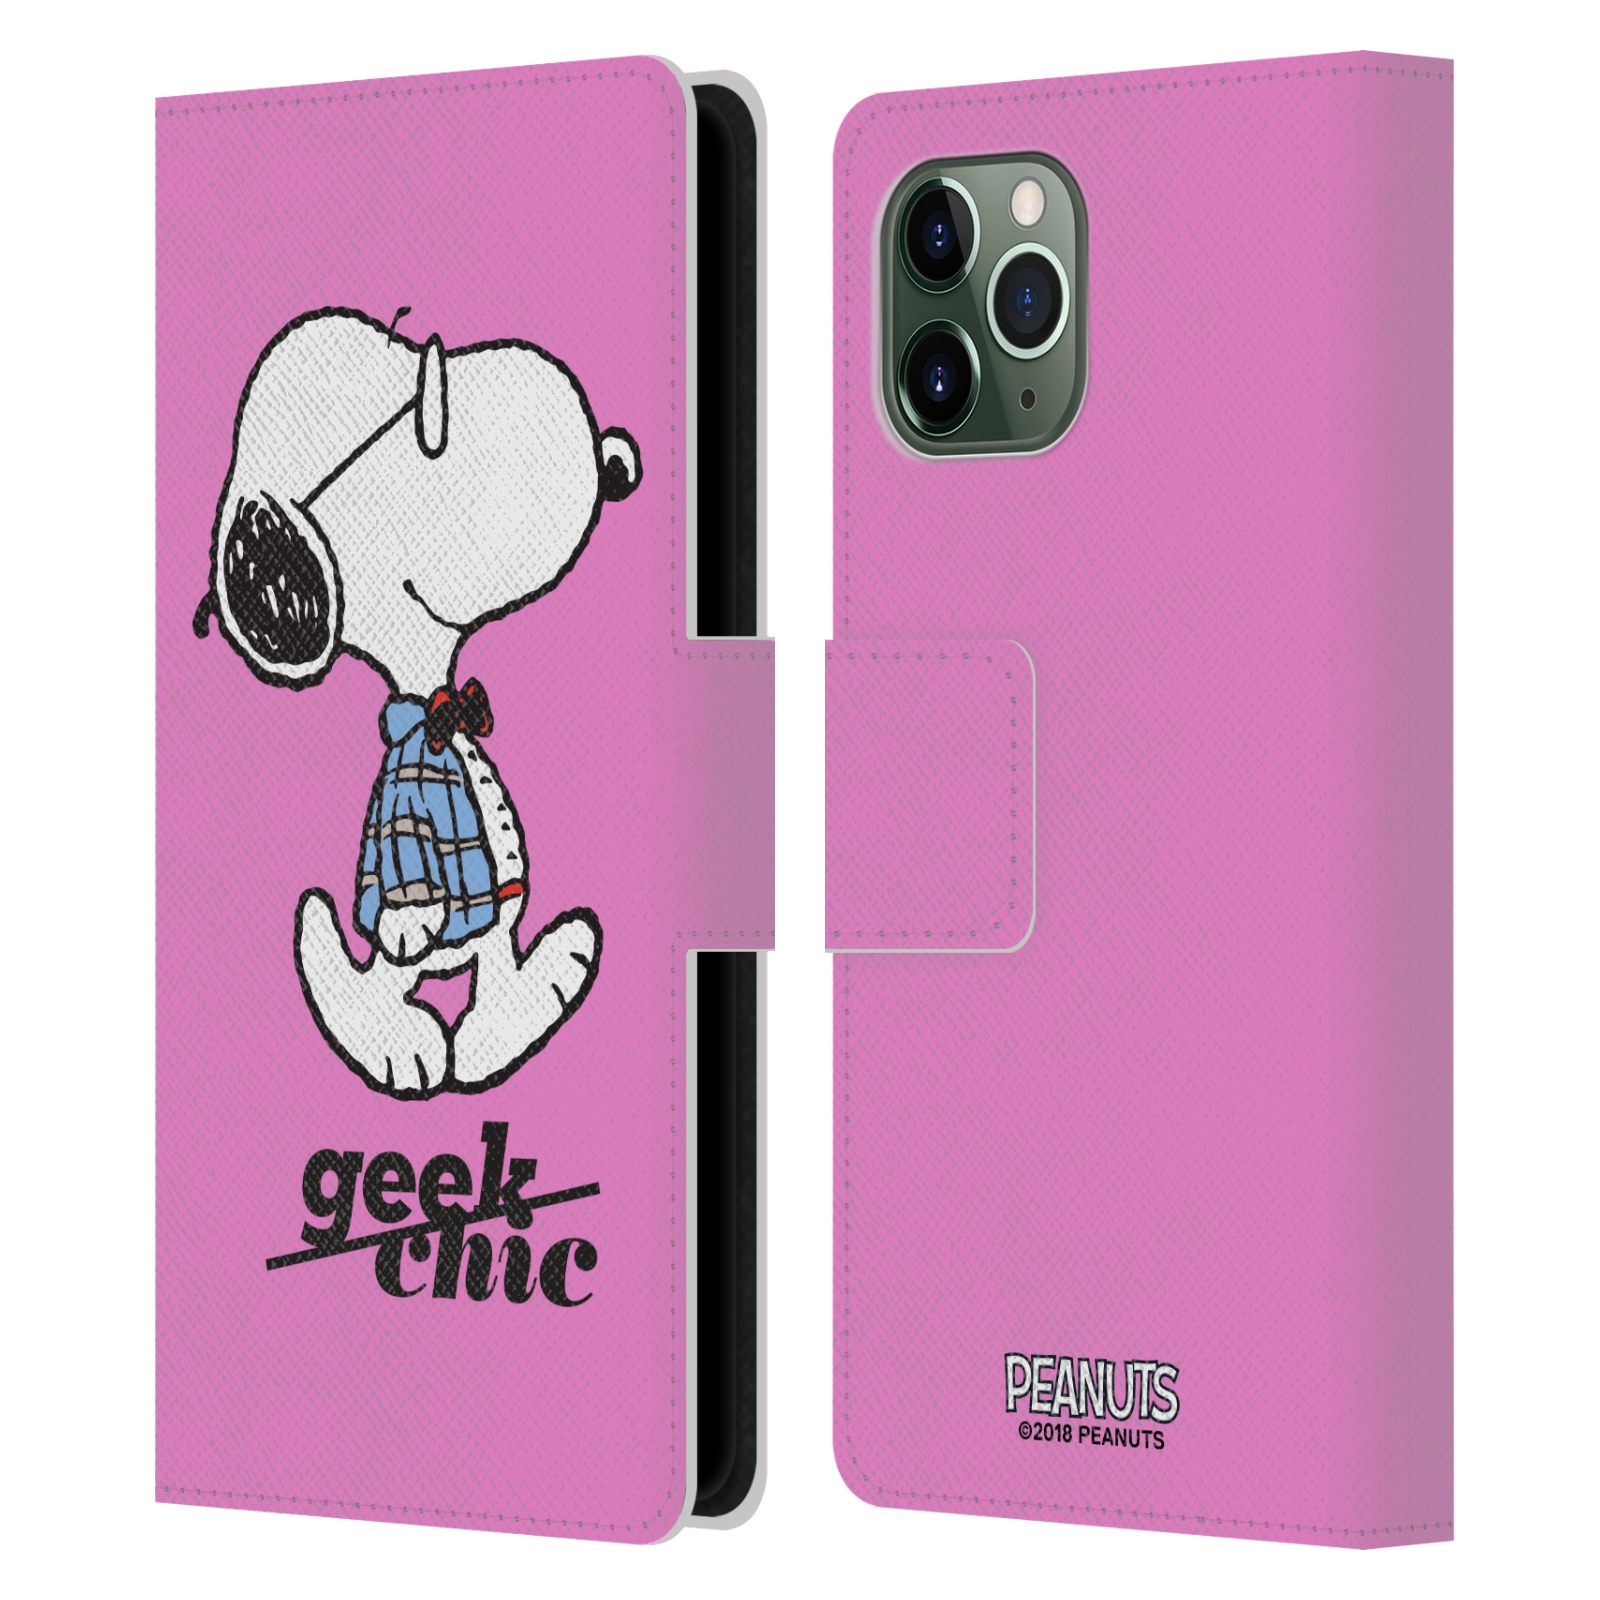 Pouzdro na mobil Apple Iphone 11 PRO - Head Case - Peanuts - růžový pejsek snoopy nerd